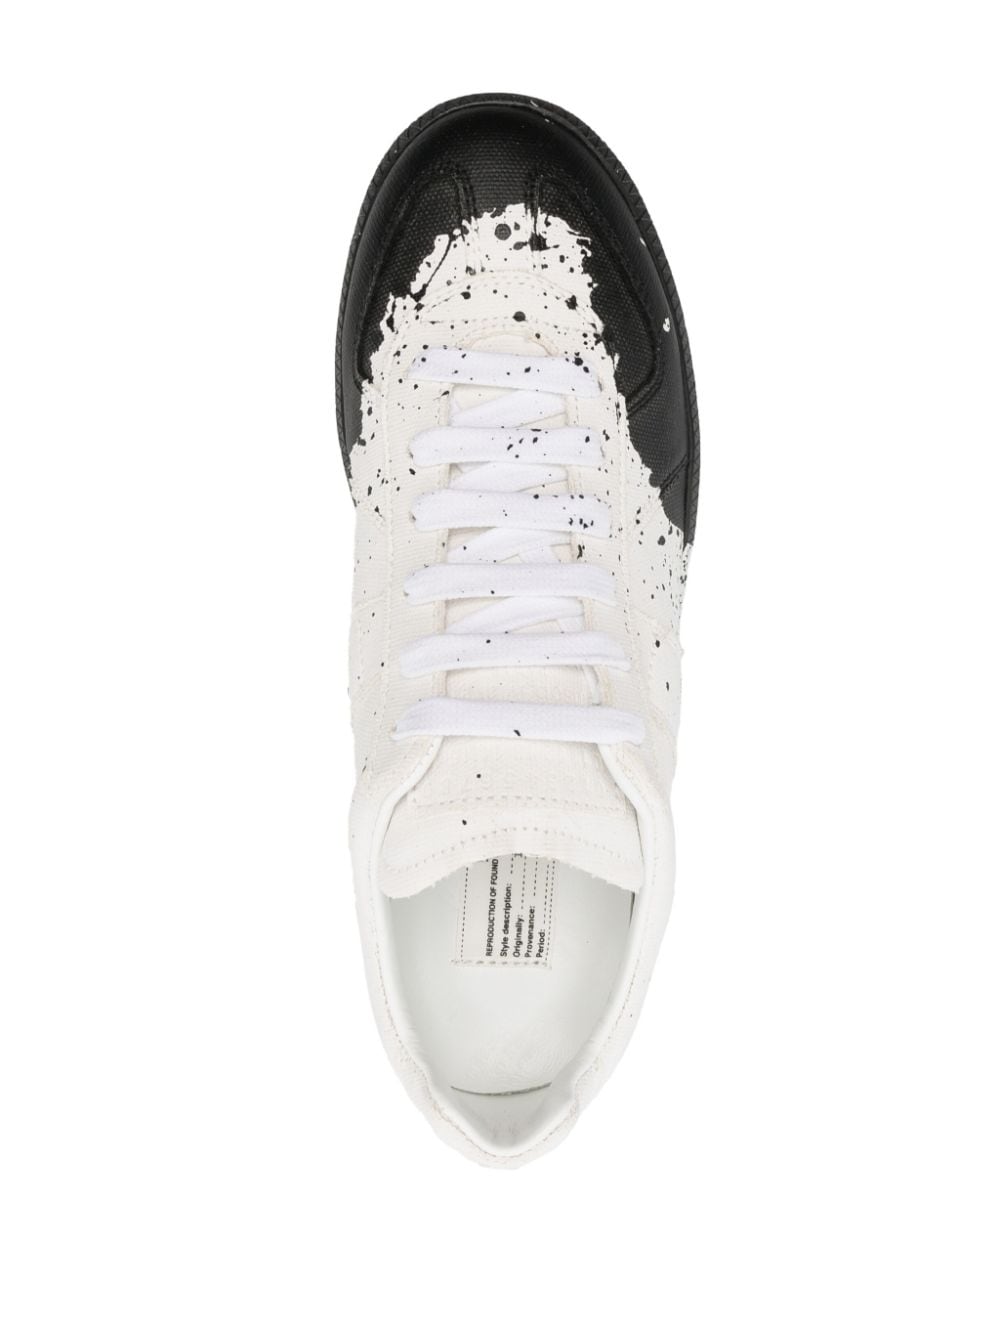 Maison Margiela Replica Paint Splash Low Top Sneaker In White/black ...